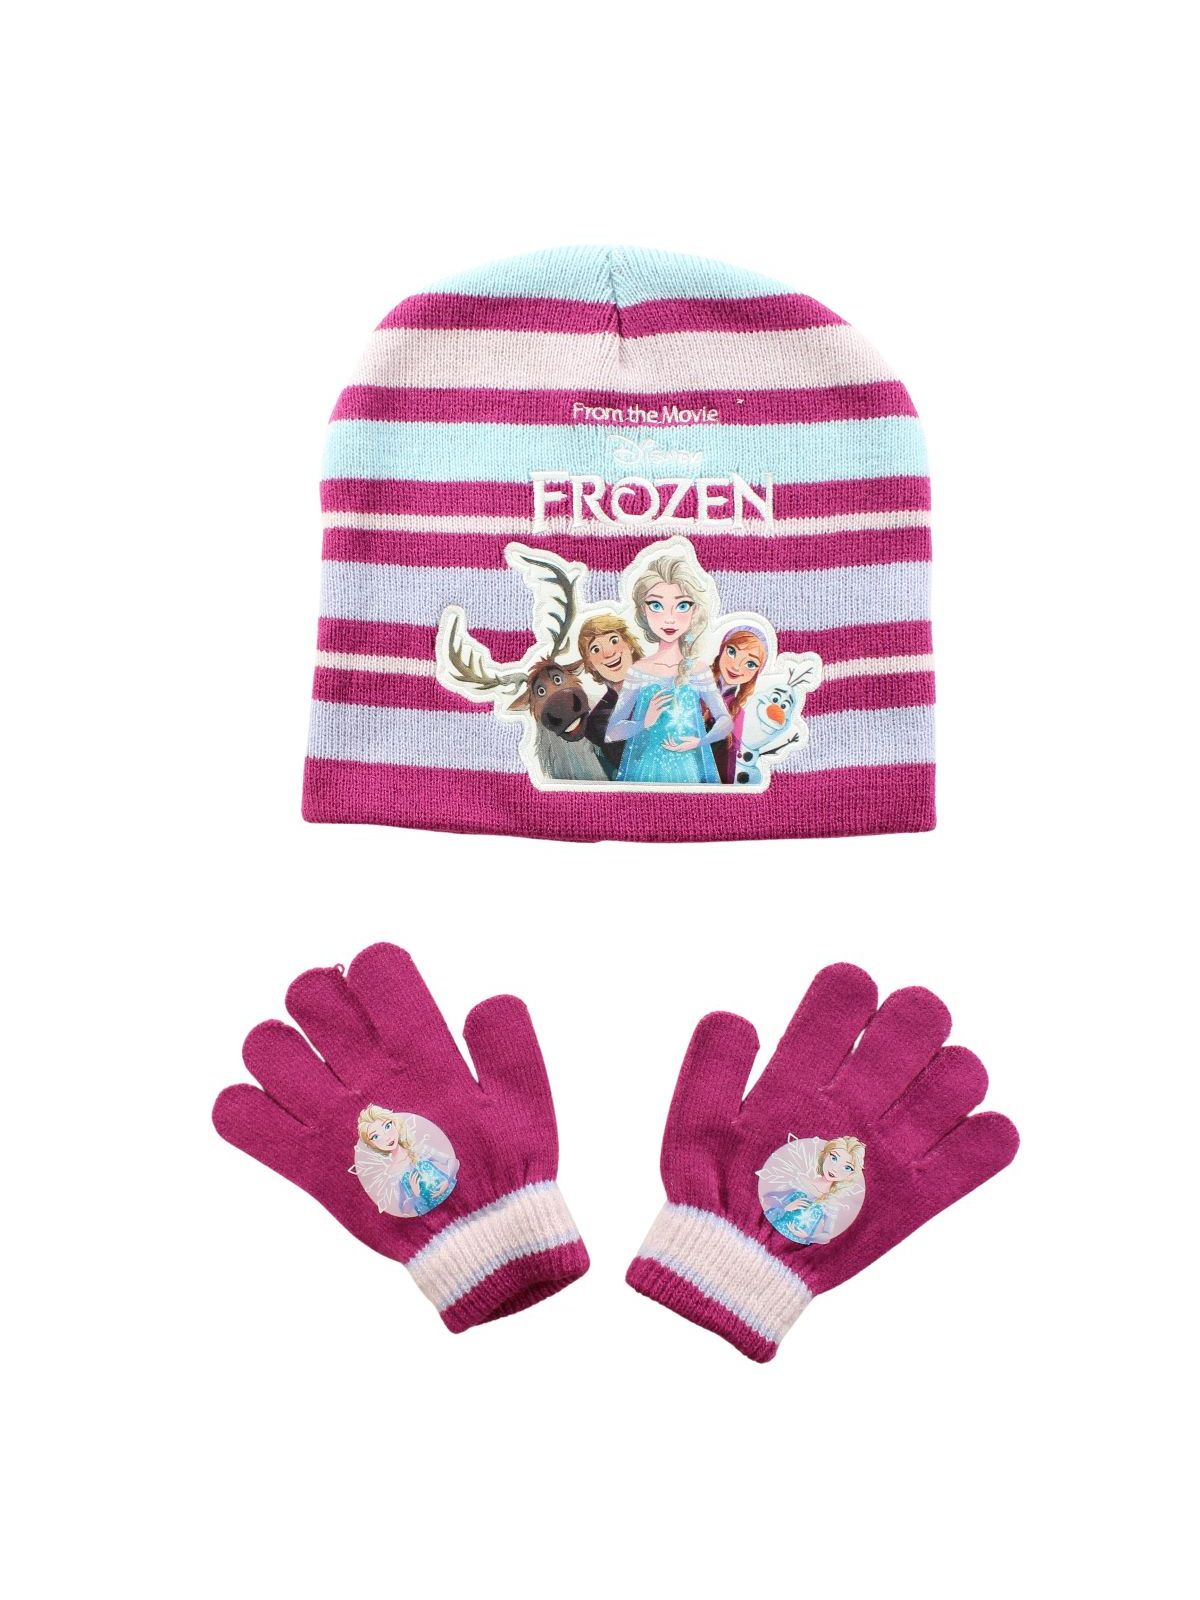 Frozen beanie glove